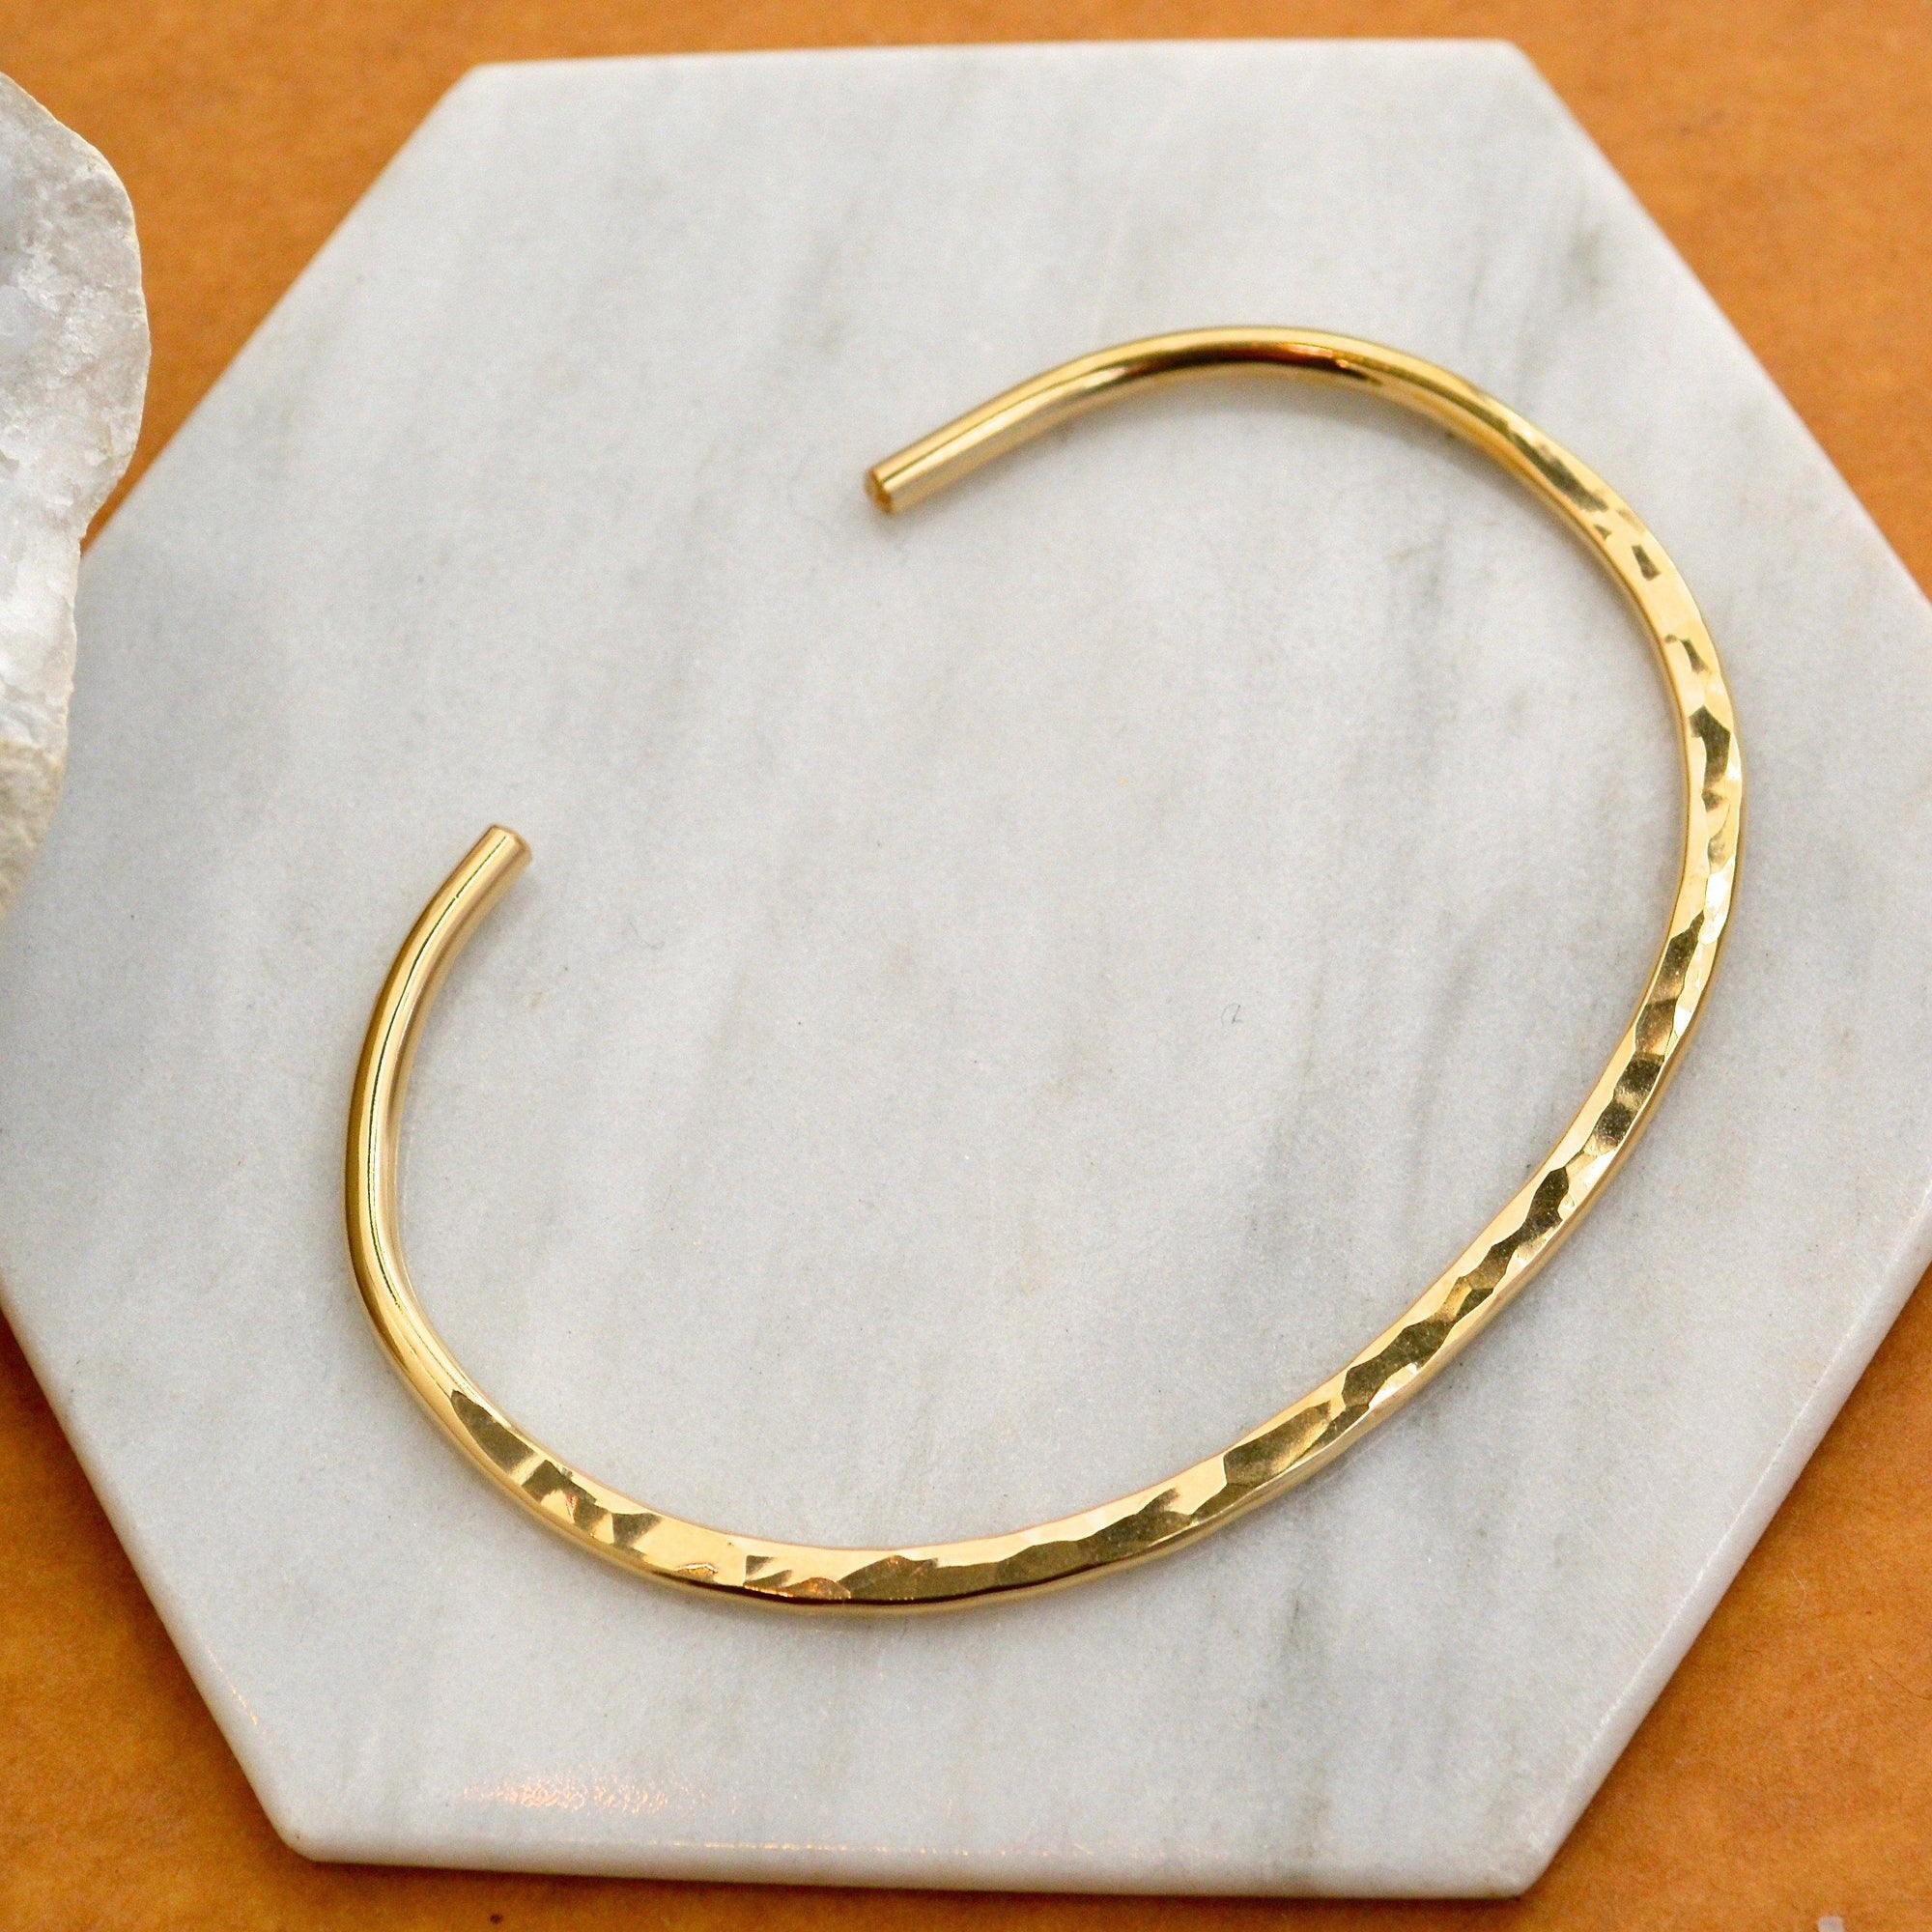 Canoe Cuff Bracelet - handmade 14K gold hammered oval cuff bracelet - Foamy Wader